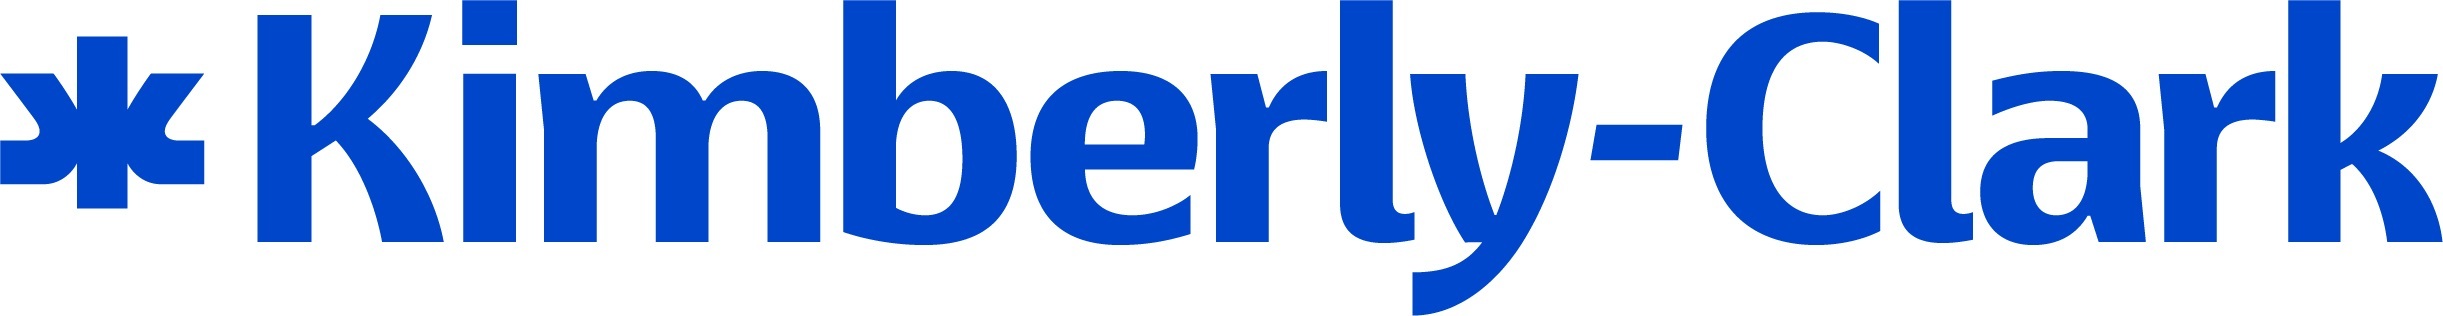 Logo: Kimberly-Clark Corporation (PRNewsfoto/Kimberly-Clark Corporation)